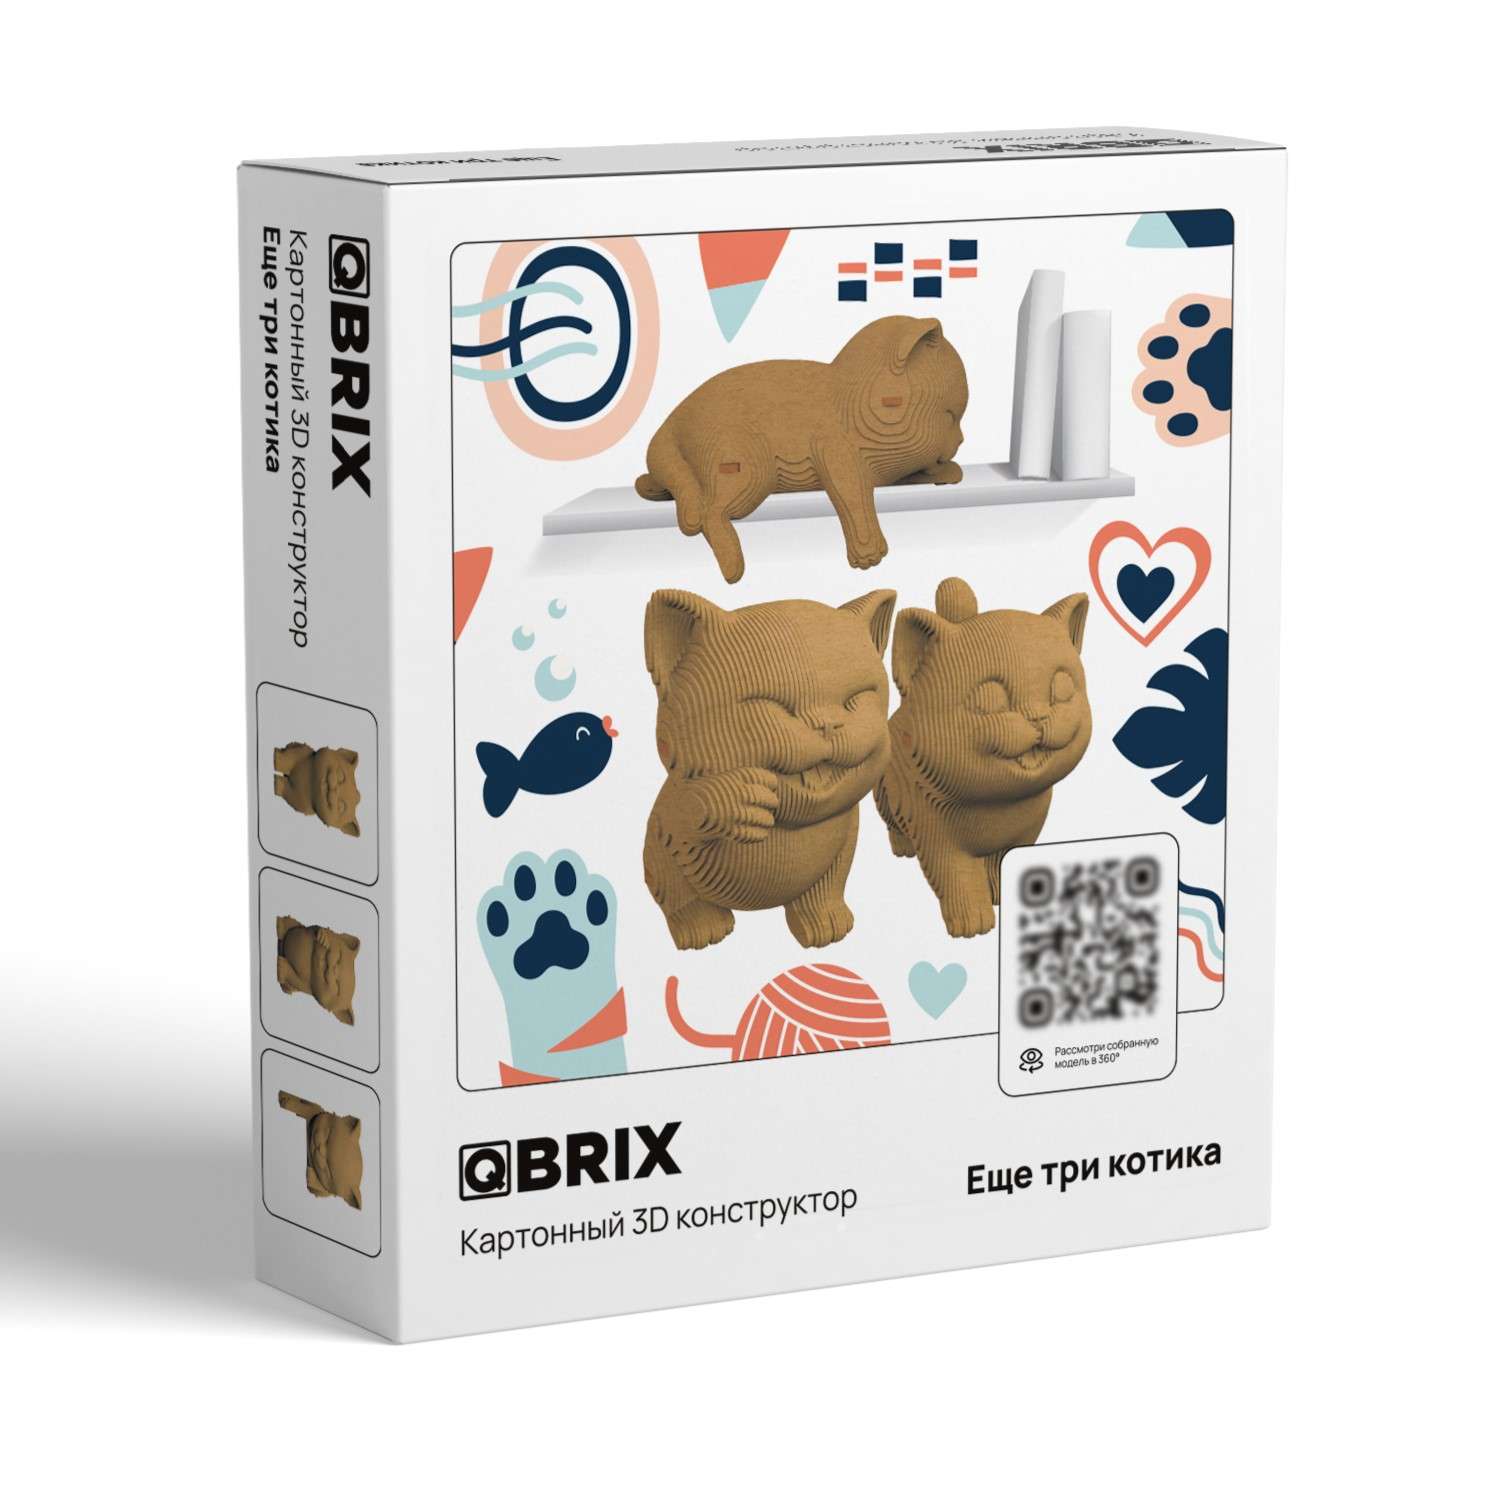 Конструктор QBRIX 3D картонный Еще три котика 20030 20030 - фото 1